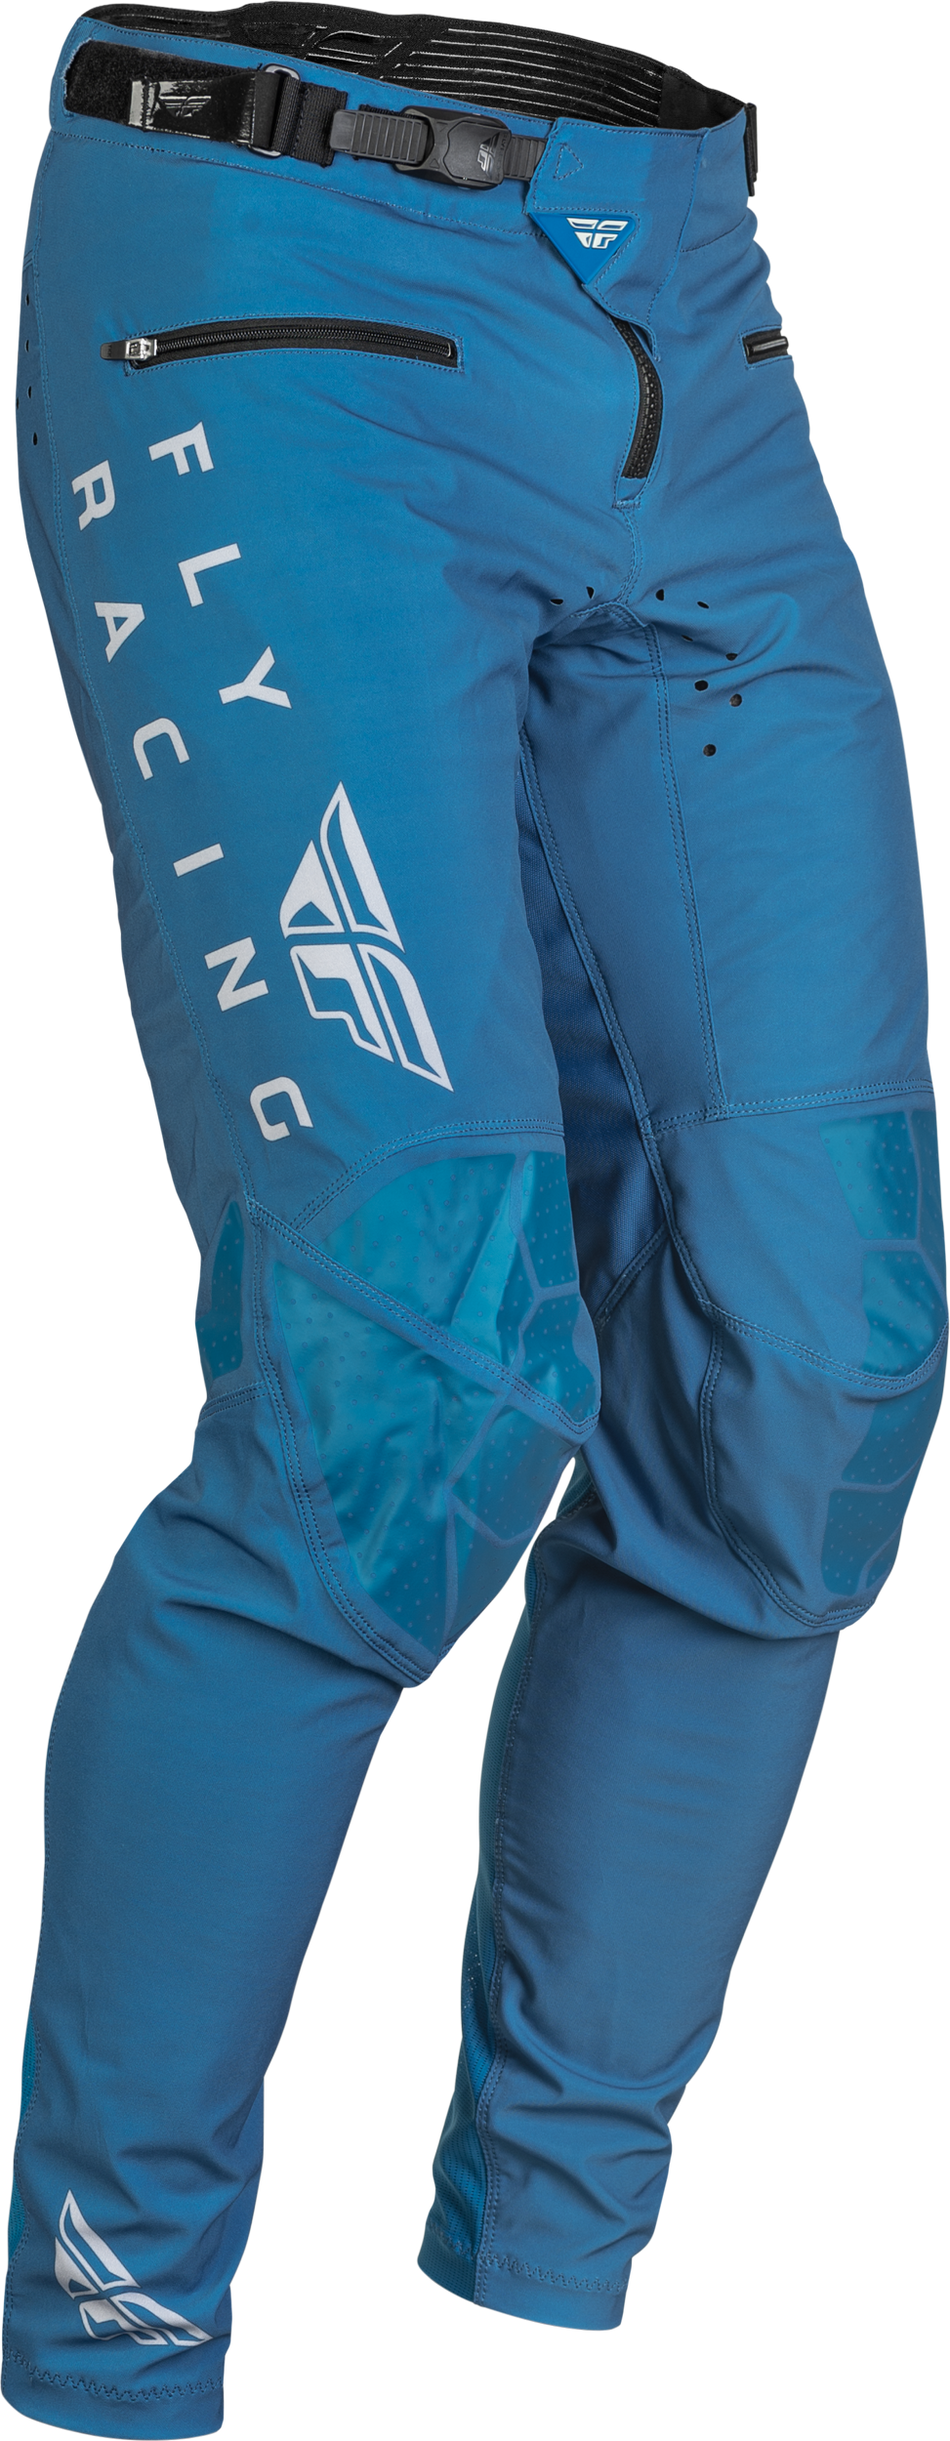 FLY RACING Radium Bicycle Pants Slate Blue/Grey Sz 30 376-04430